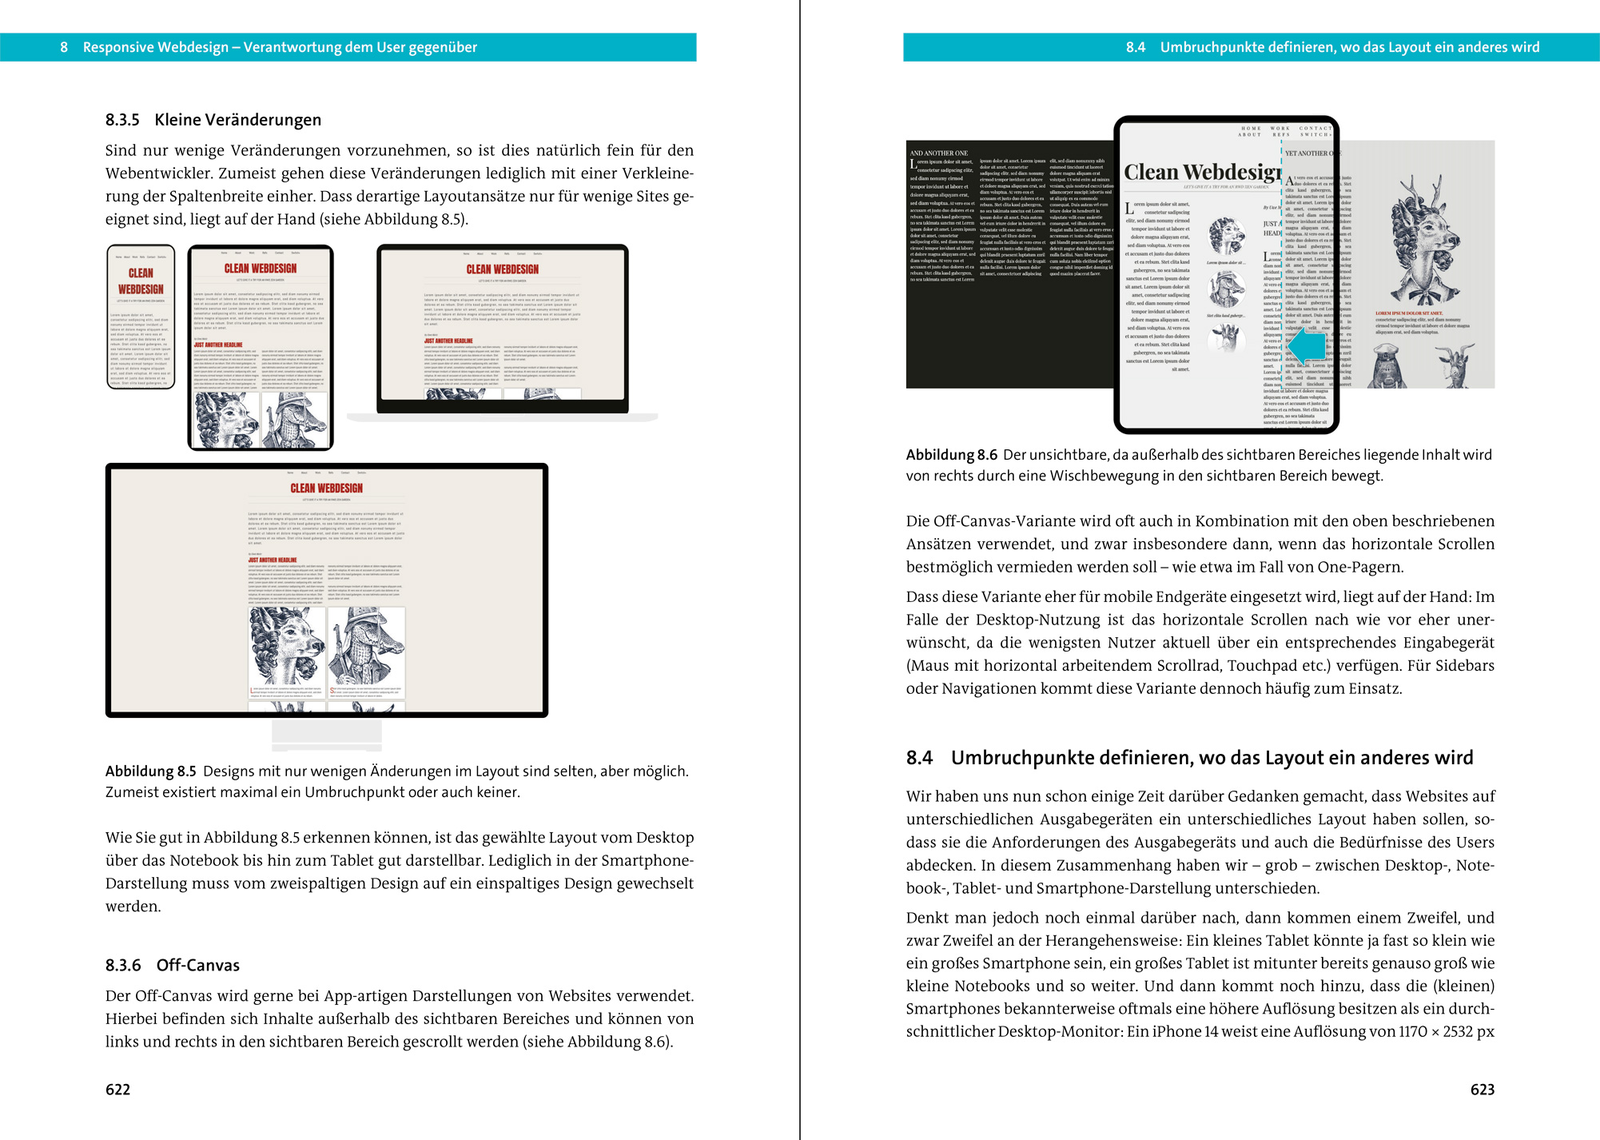 Webseiten programmieren und gestalten - Das umfassende Handbuch